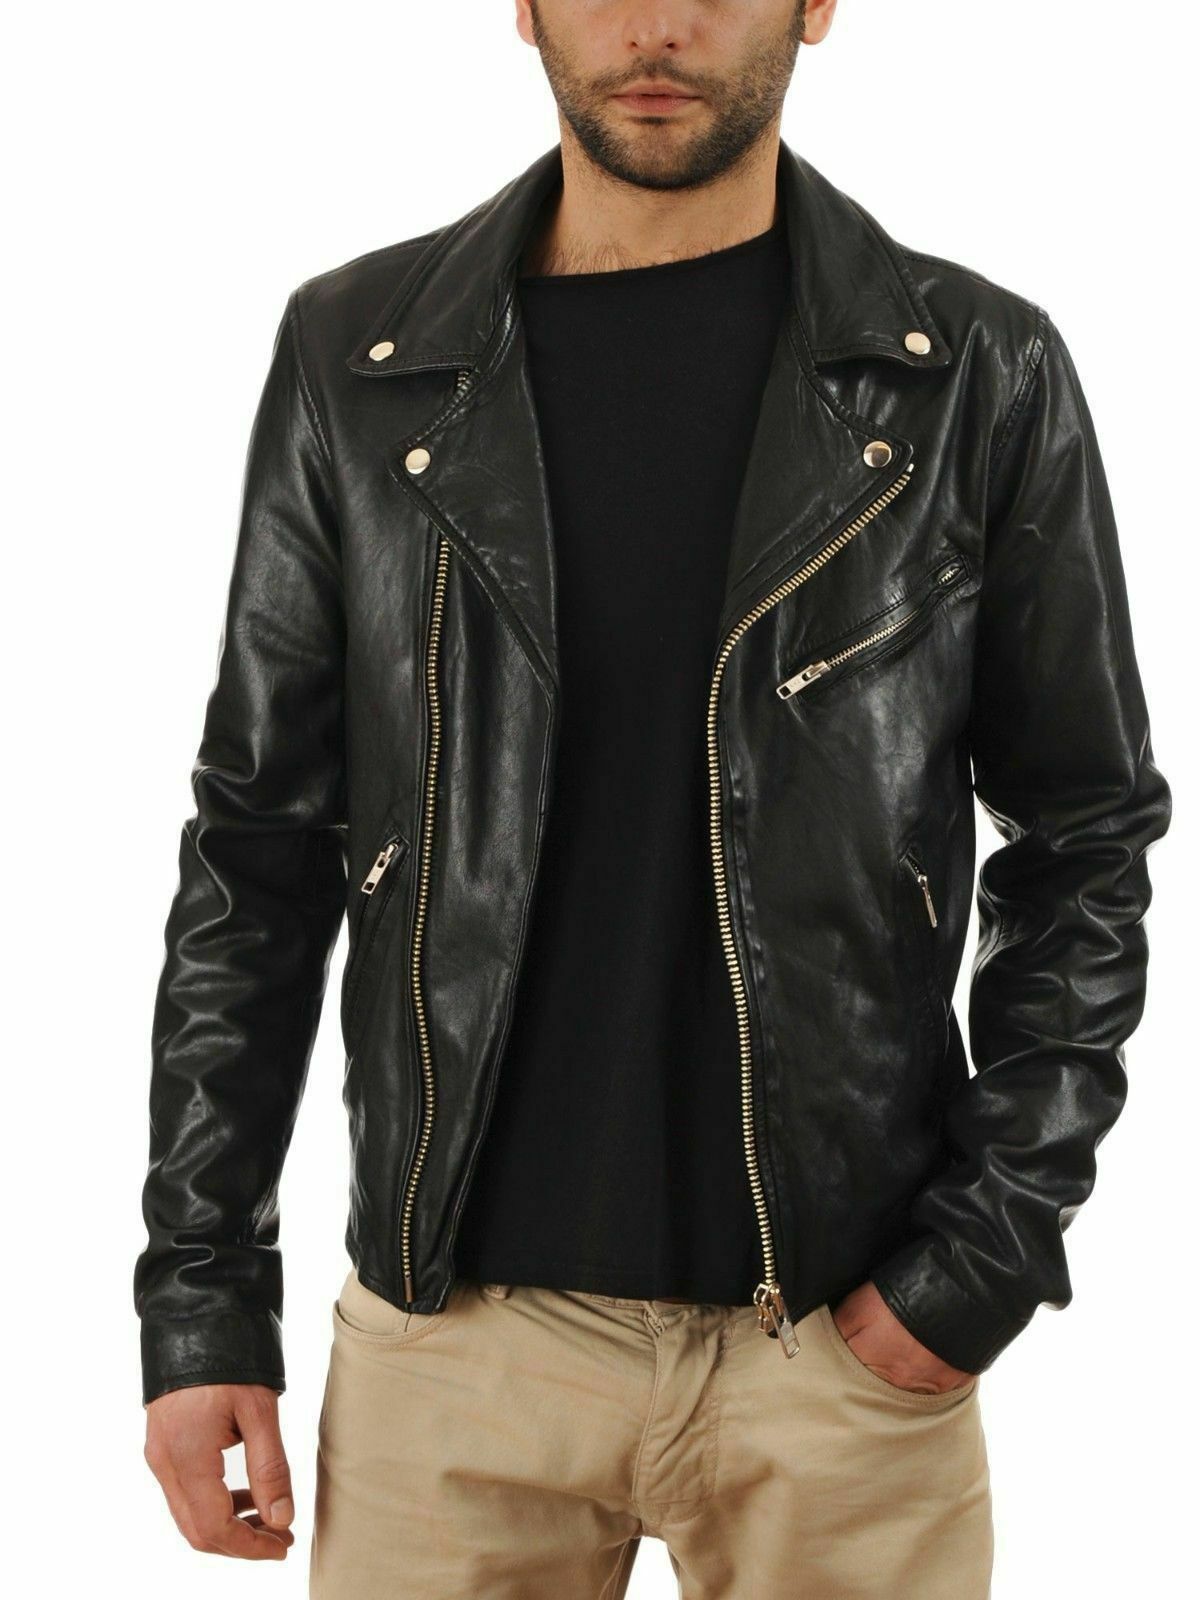 NOORA Mens Black Genuine Leather Jacket Real Lambskin Slim Fit Biker Style WA186